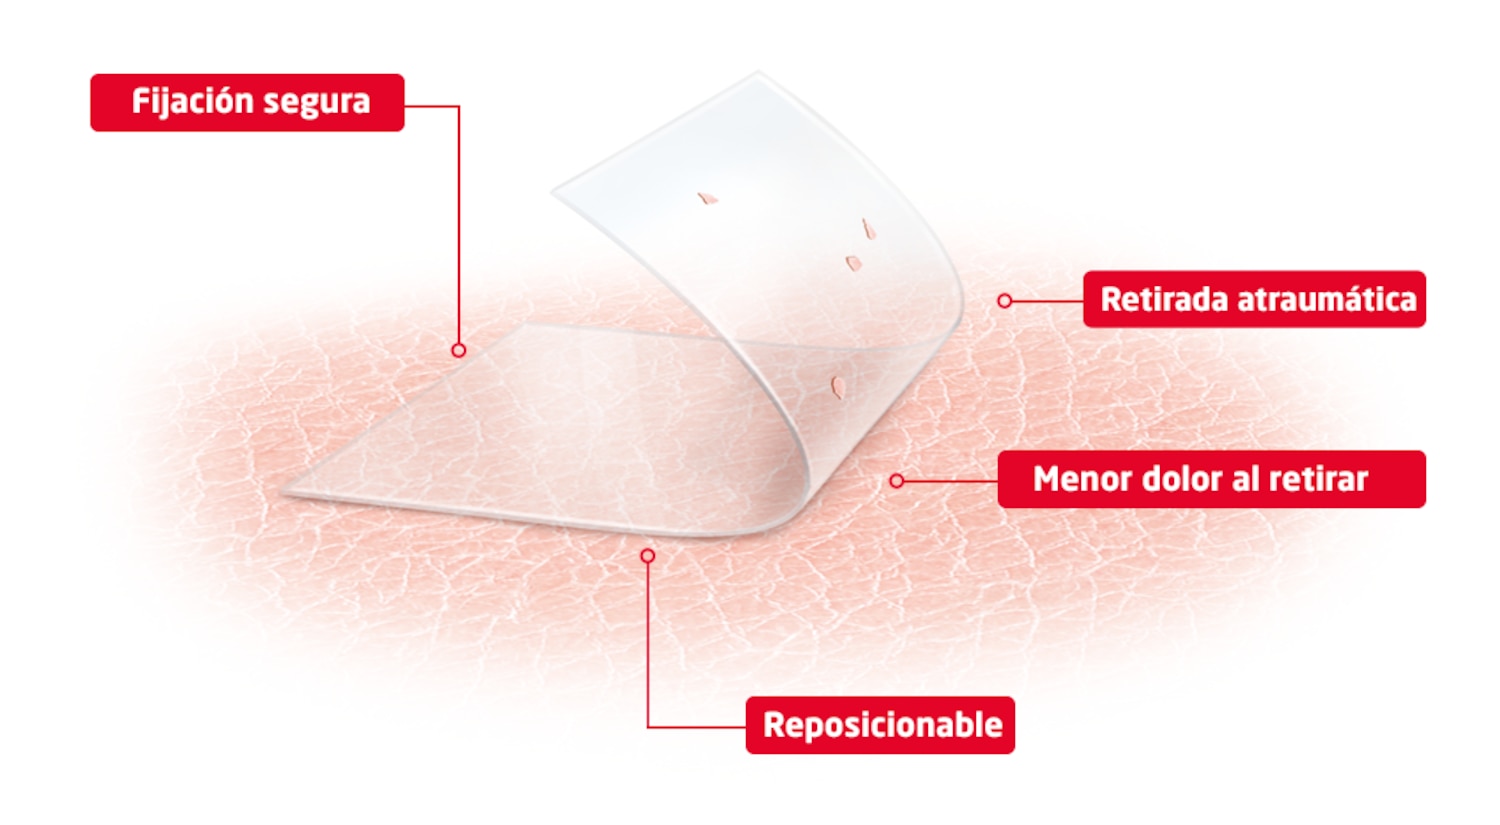 Imagen de producto que muestra los beneficios de la tecnología skin sensitive: adhesión fiable, retirada menos dolorosa, retirada atraumática y producto reposicionable